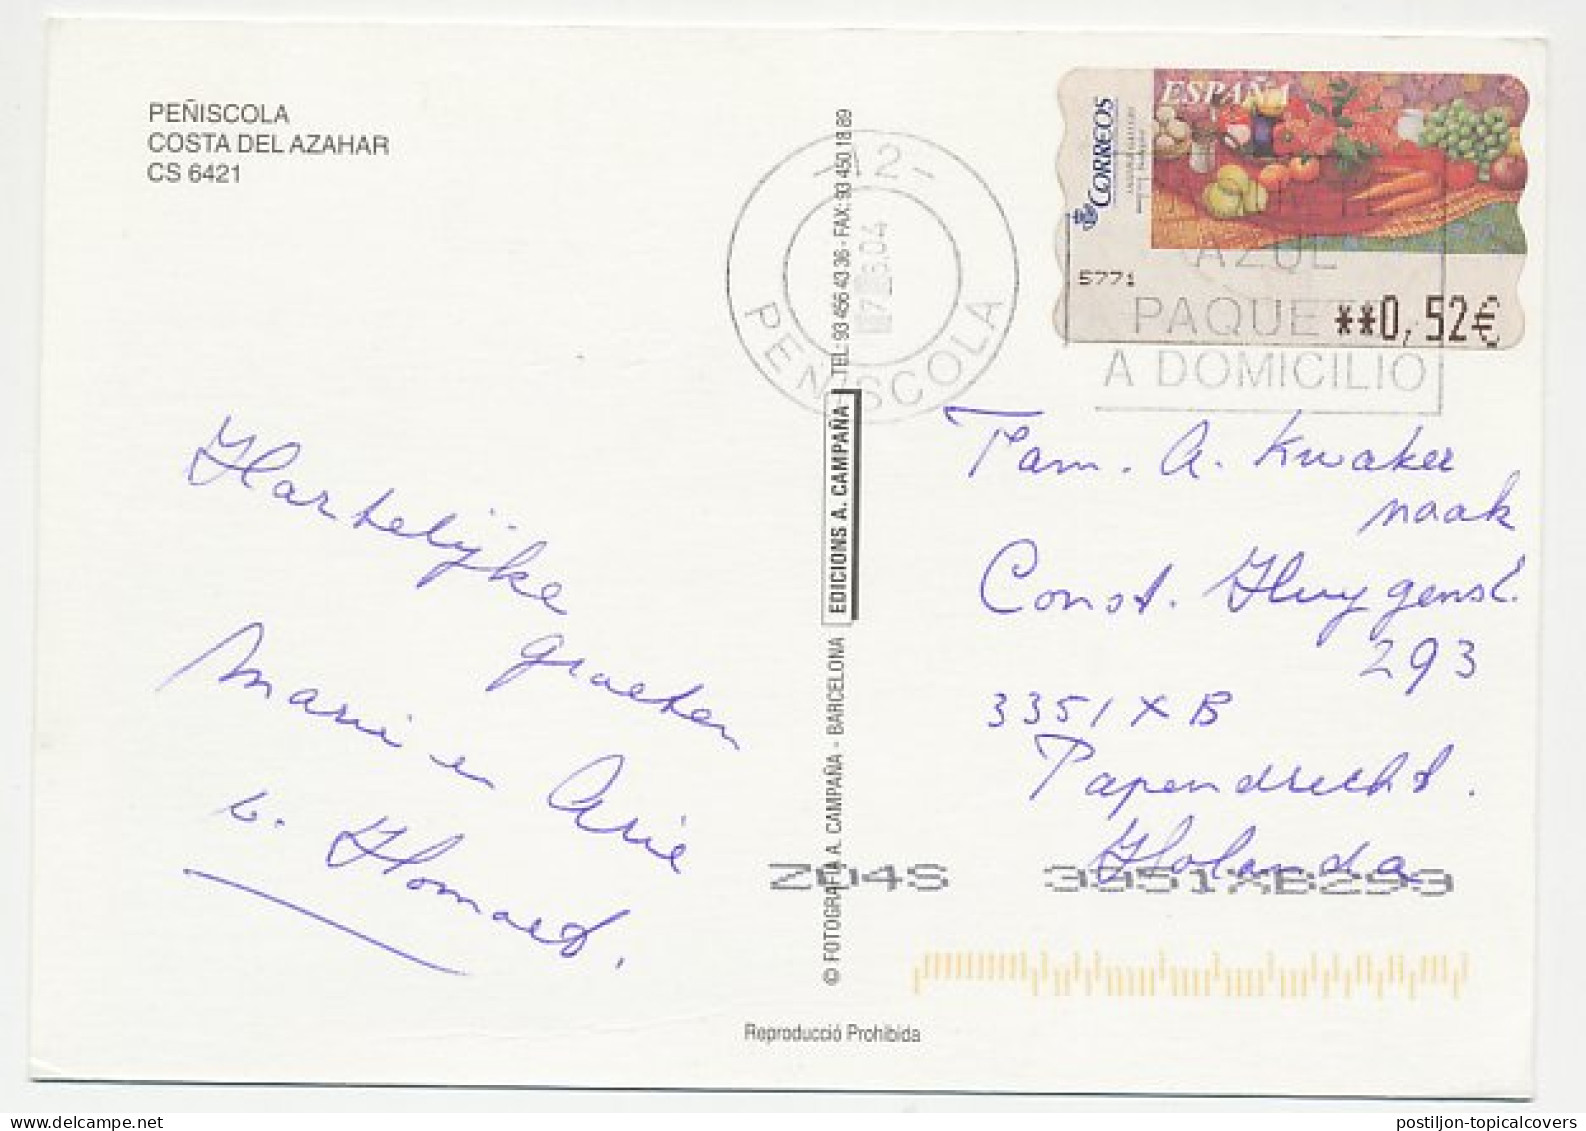 Postcard / ATM Stamp Spain 2004 Fruit - Vegetables - Frutas